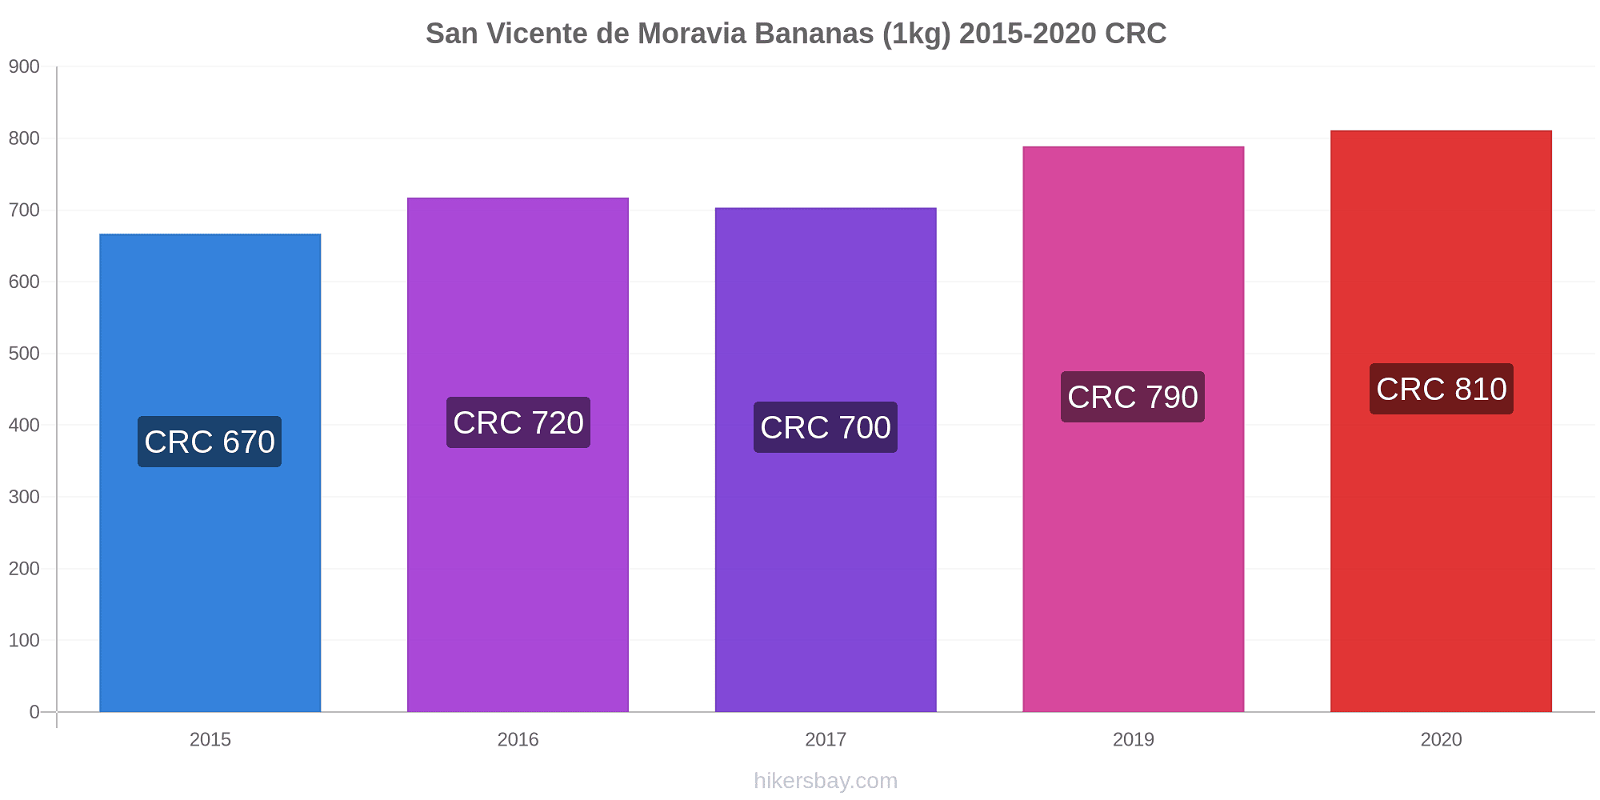 San Vicente de Moravia variação de preço Banana (1kg) hikersbay.com